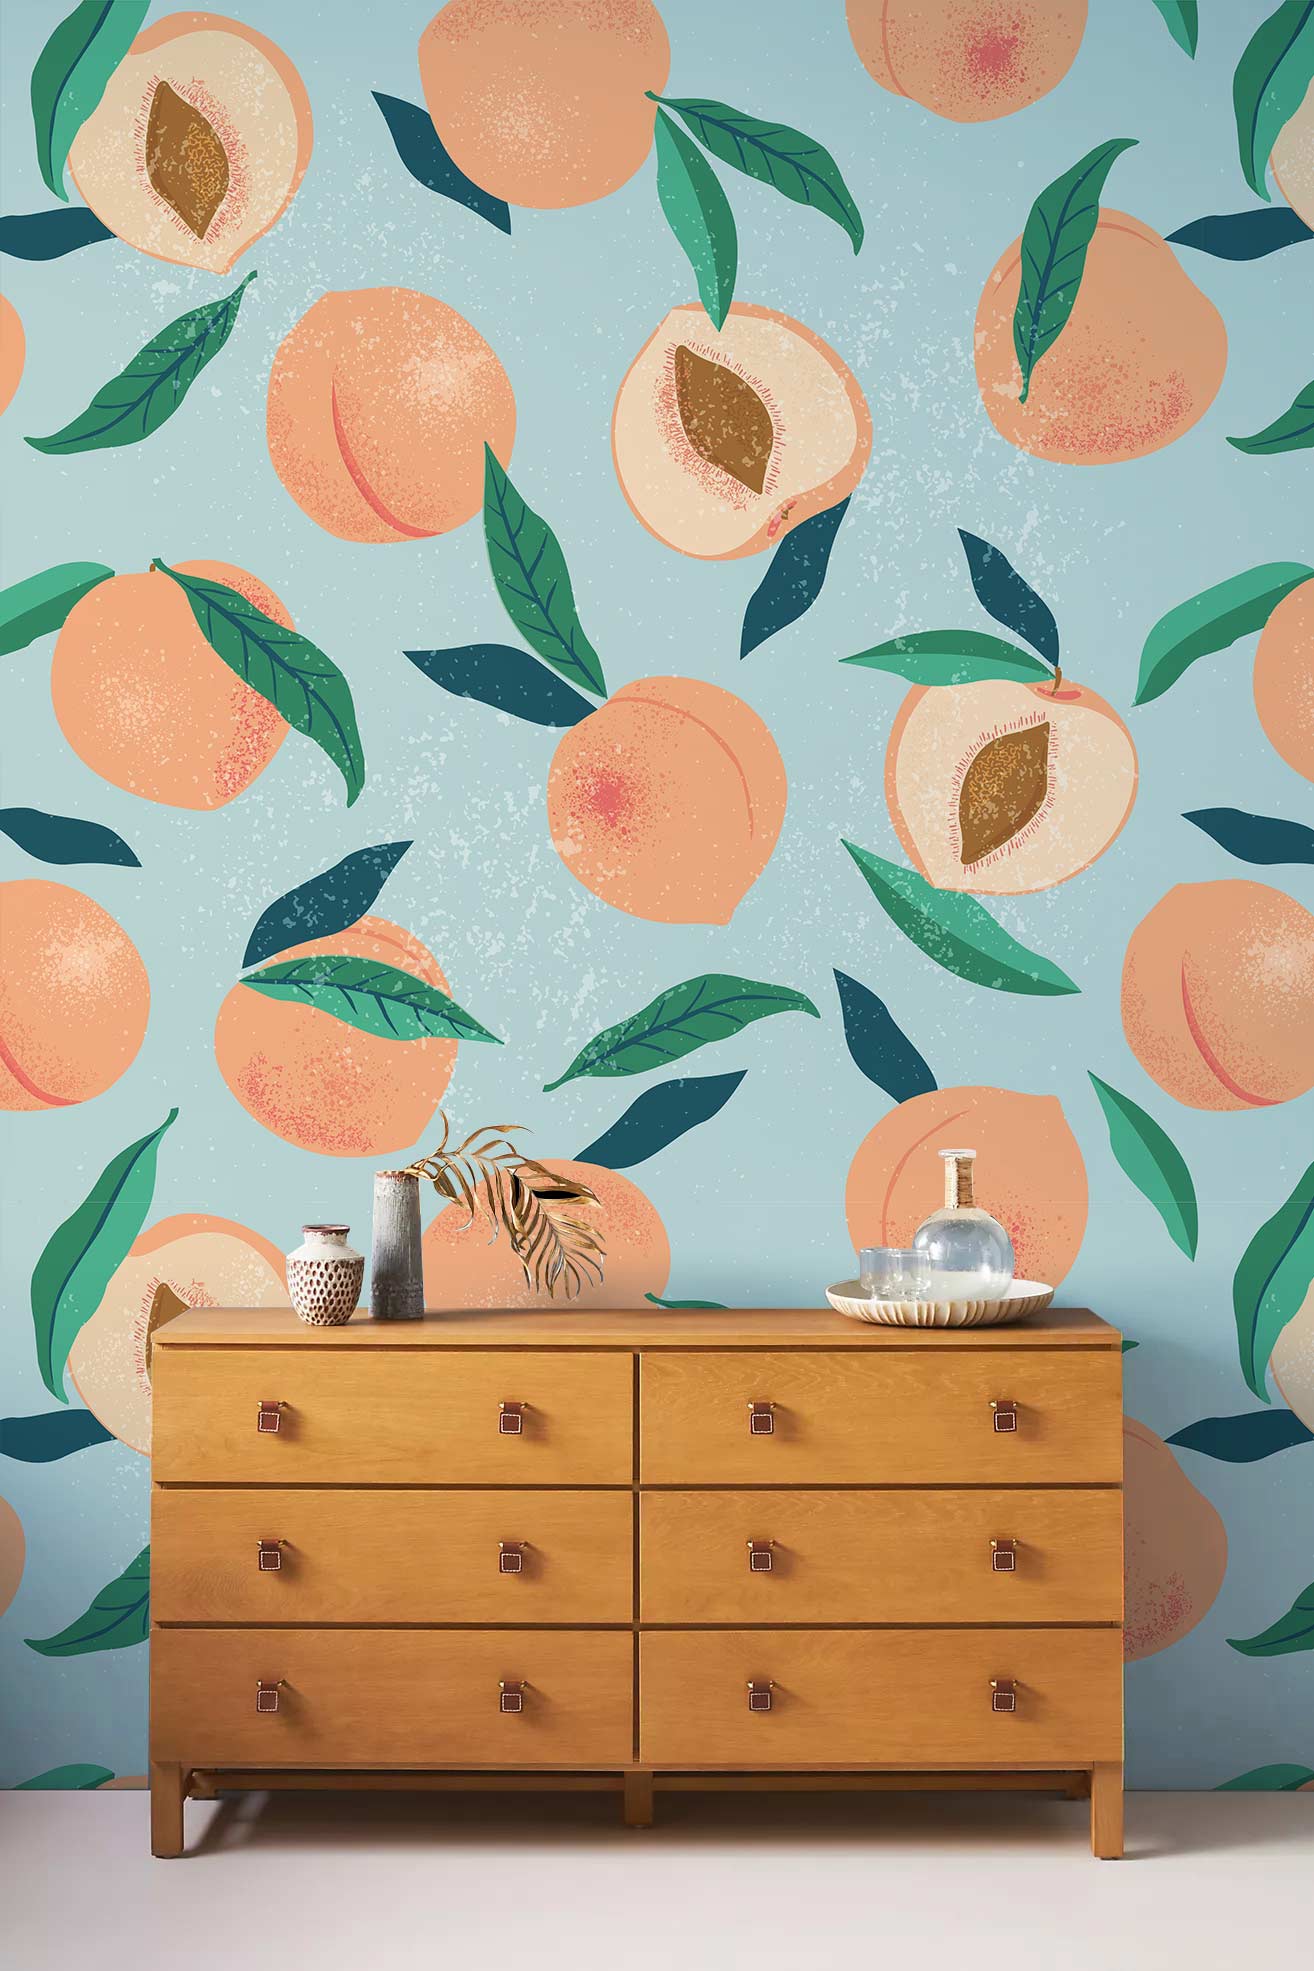 Fresh Peach Fruit Pattern Wall Mural Home Decor